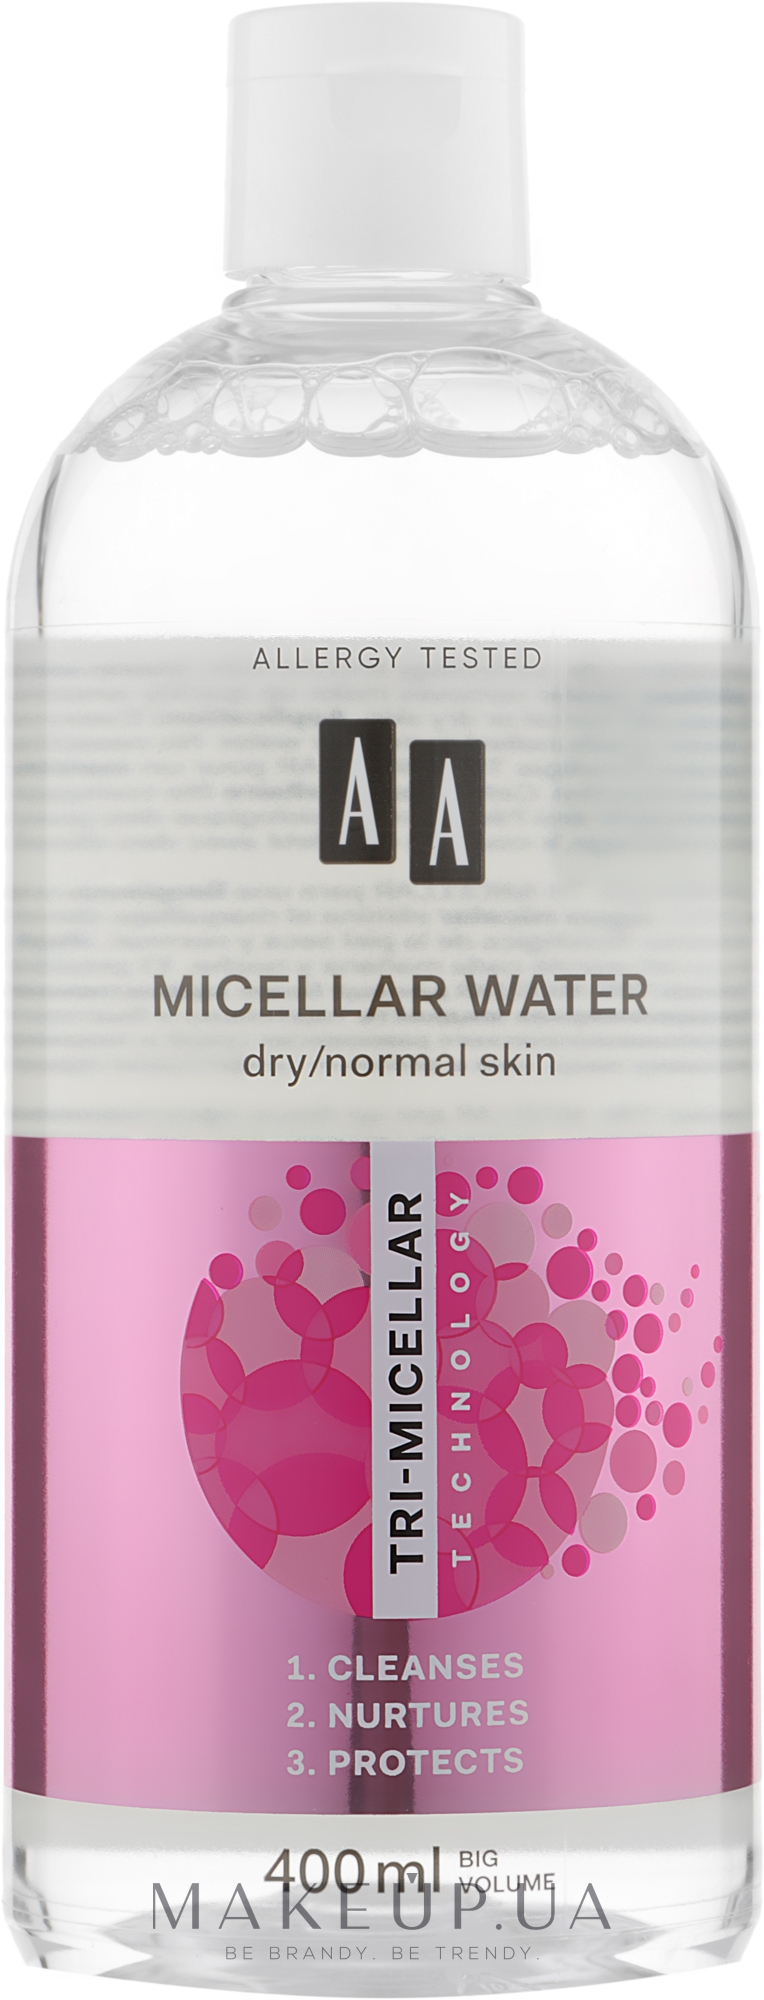 Мицеллярная вода для сухой и нормальной кожи - AA Tri-Micellar 3-in-1 Micellar Water — фото 400ml